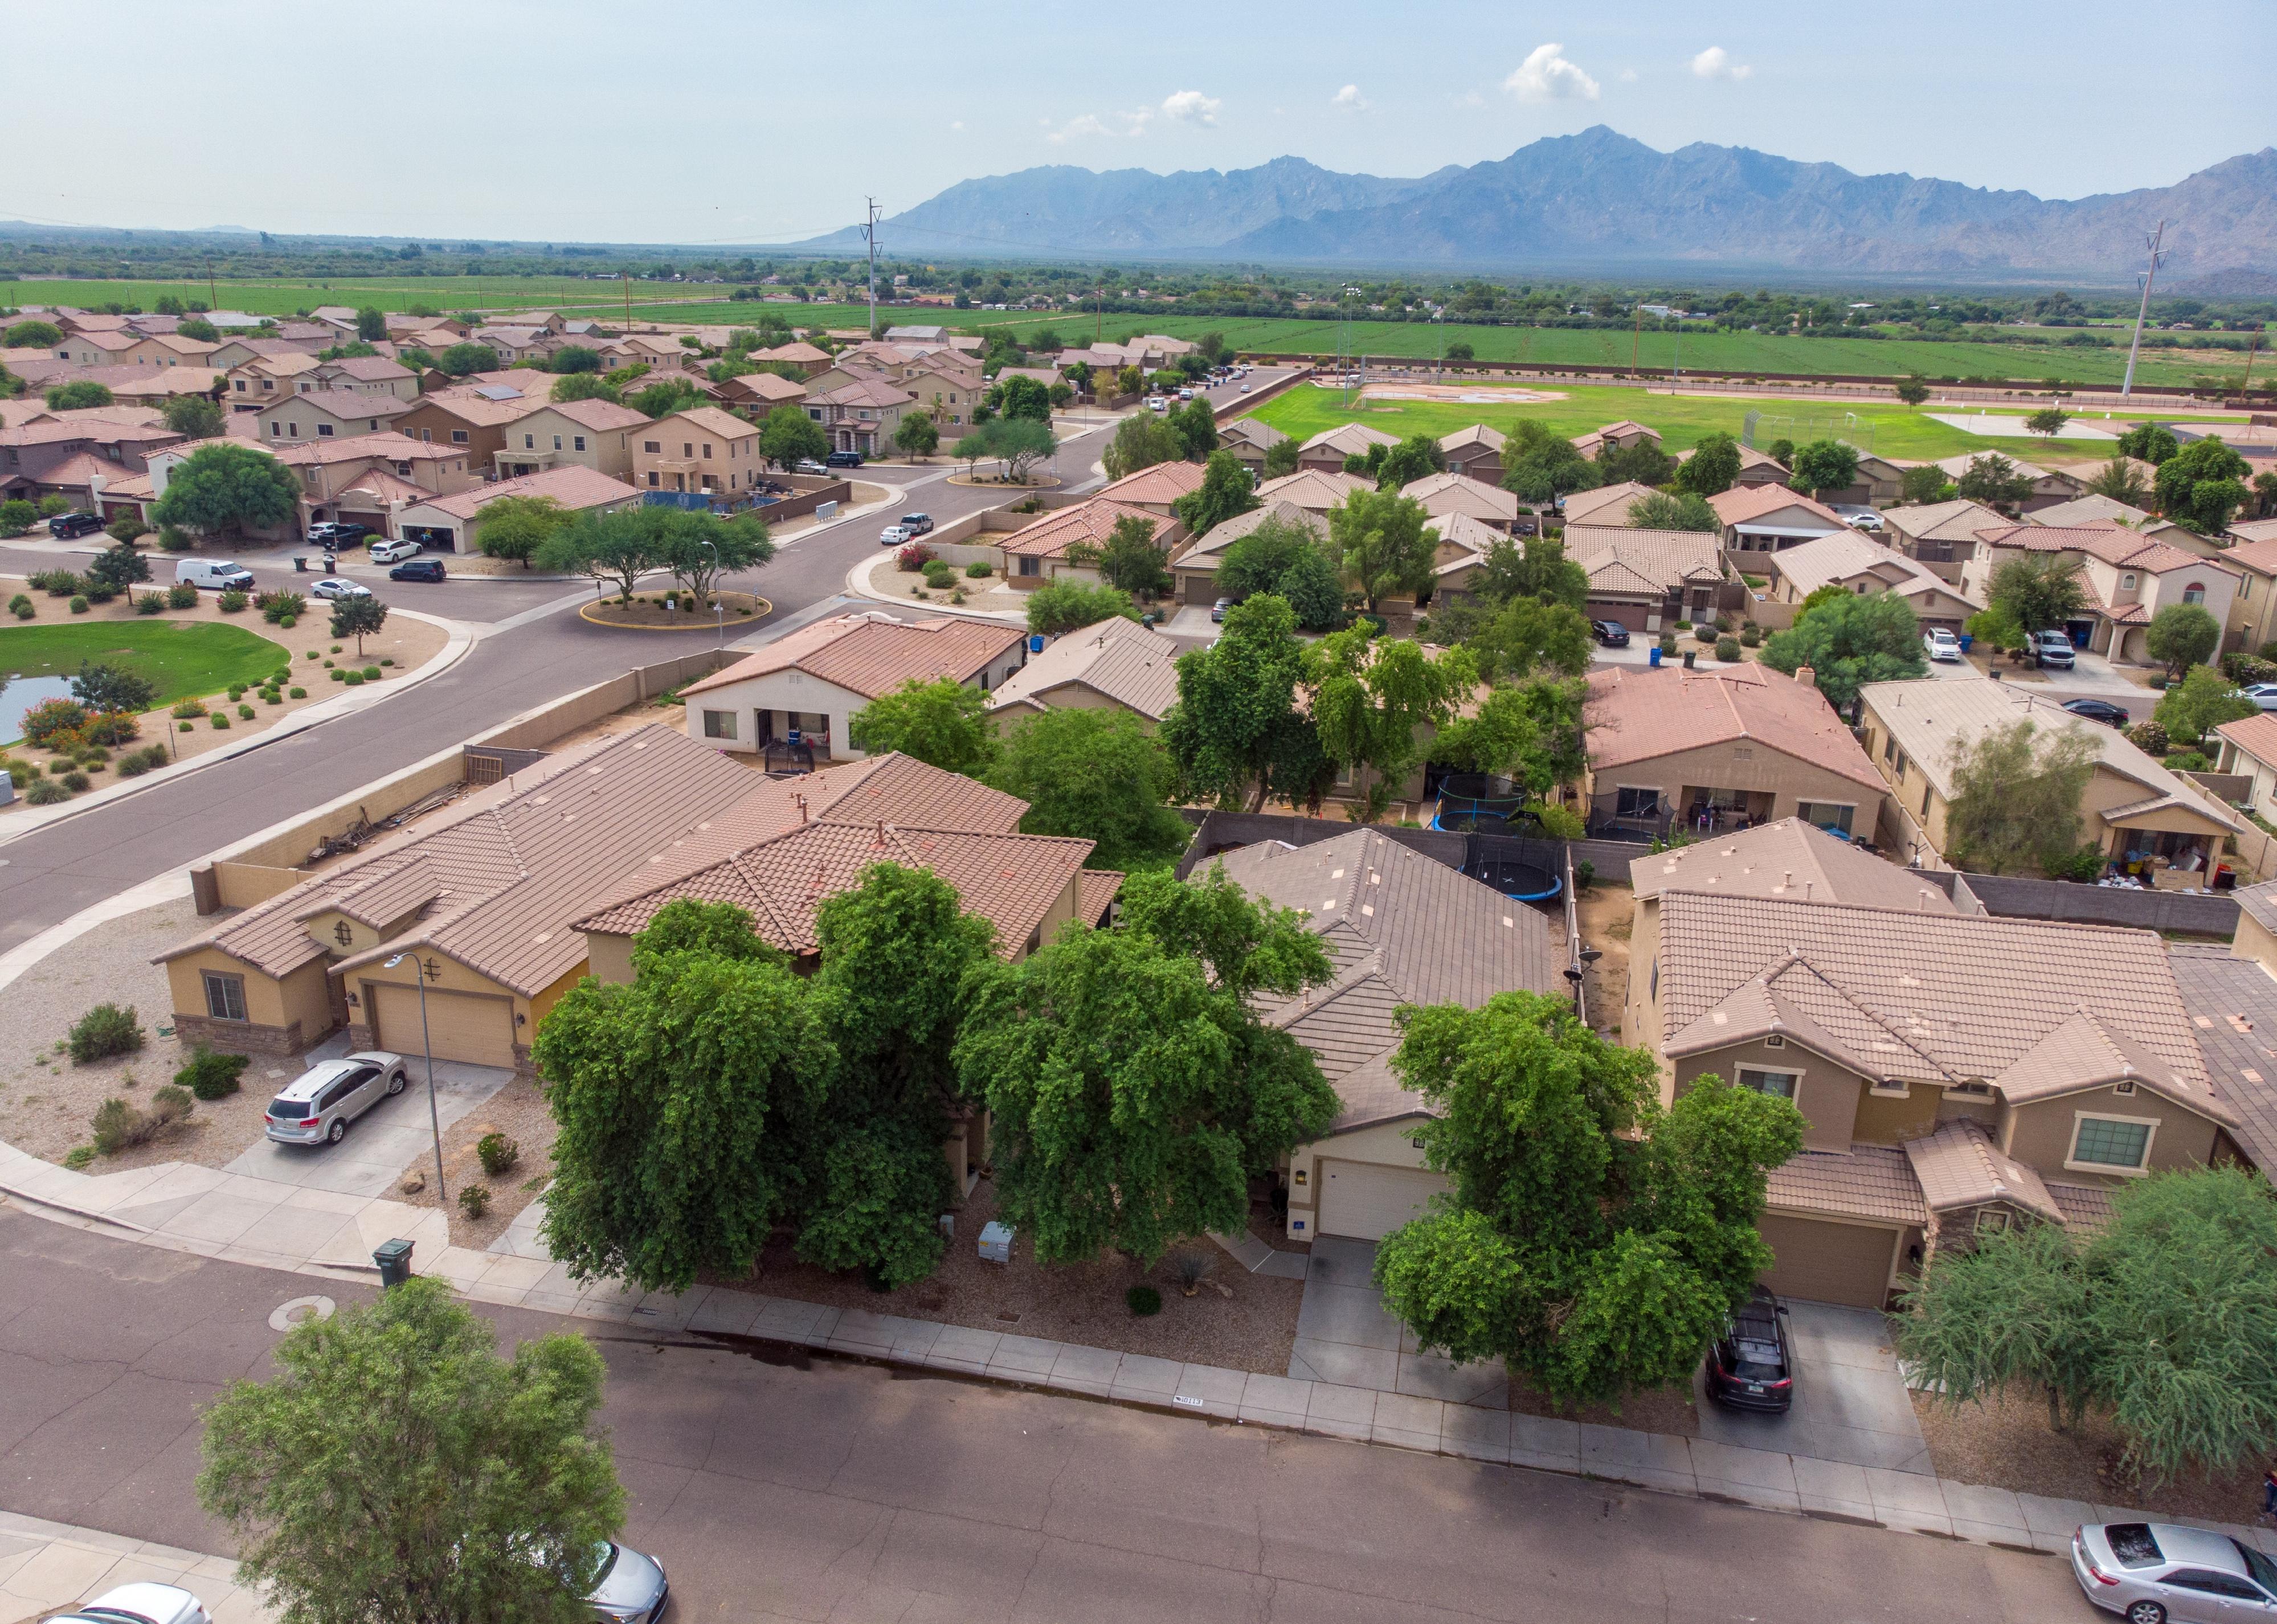 Aerial neighborhood in Phoenix.